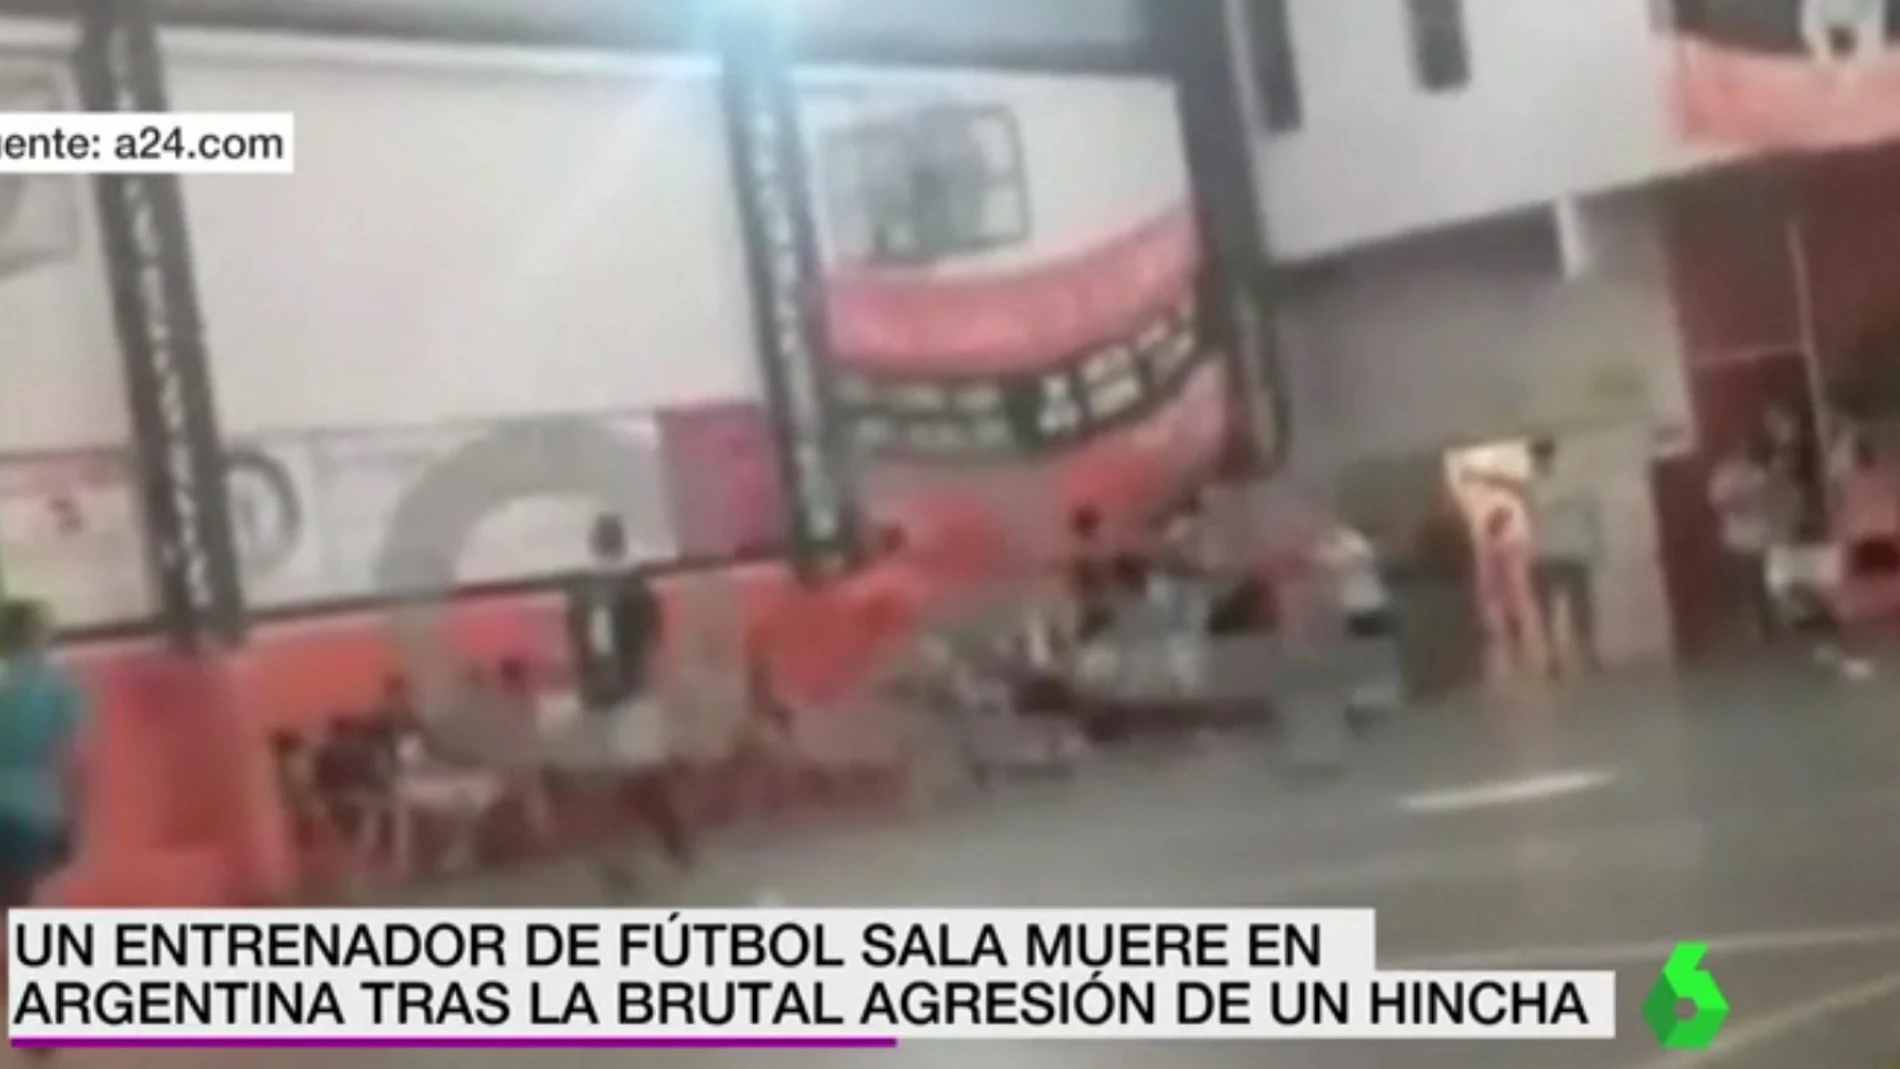 Agresión mortal en un partido de fútbol sala en Argentina